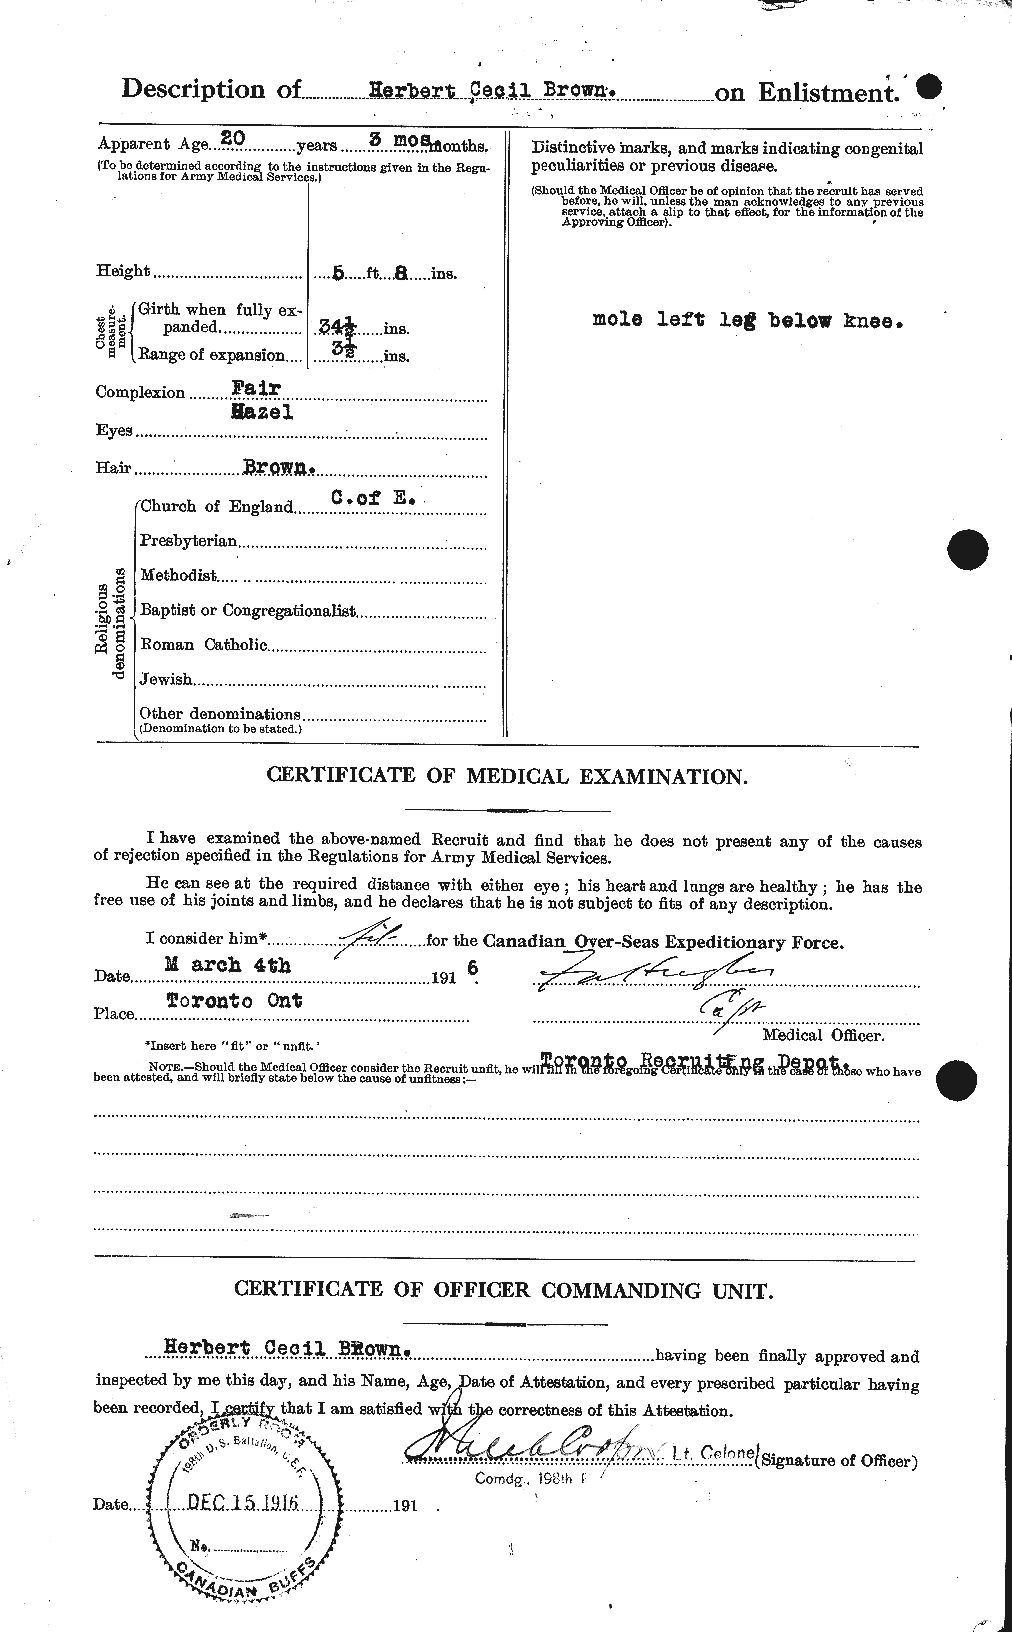 Dossiers du Personnel de la Première Guerre mondiale - CEC 265564b